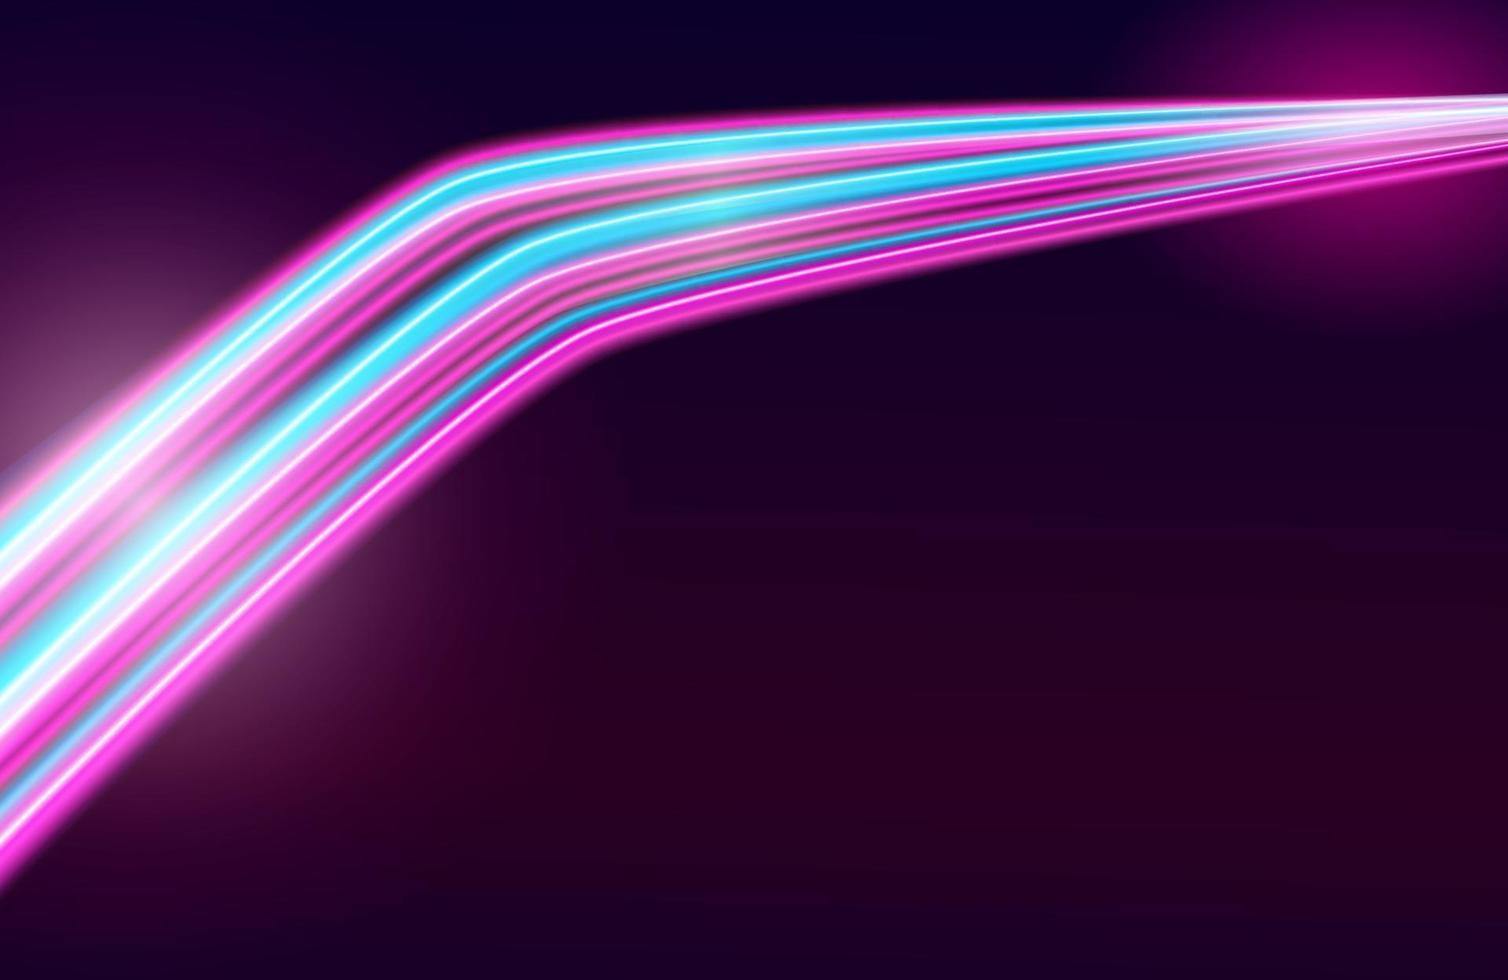 Estelas de luz de colores con efecto de desenfoque de movimiento, fondo de velocidad vector